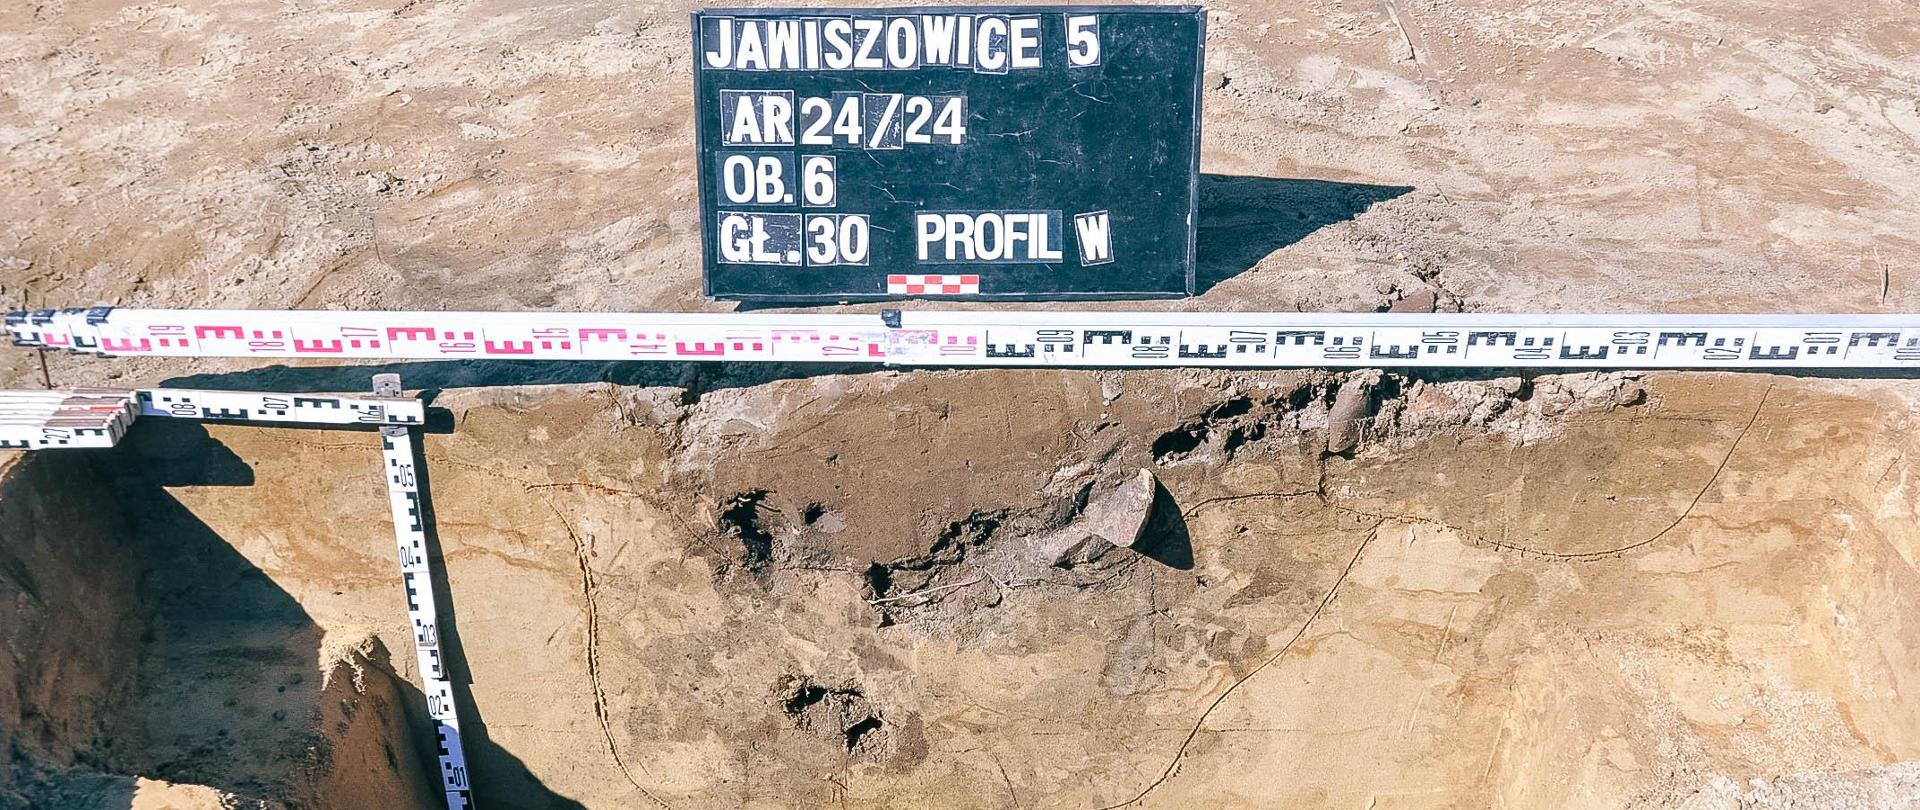 Fotografia stanowiska archeologicznego Jawiszowice 5